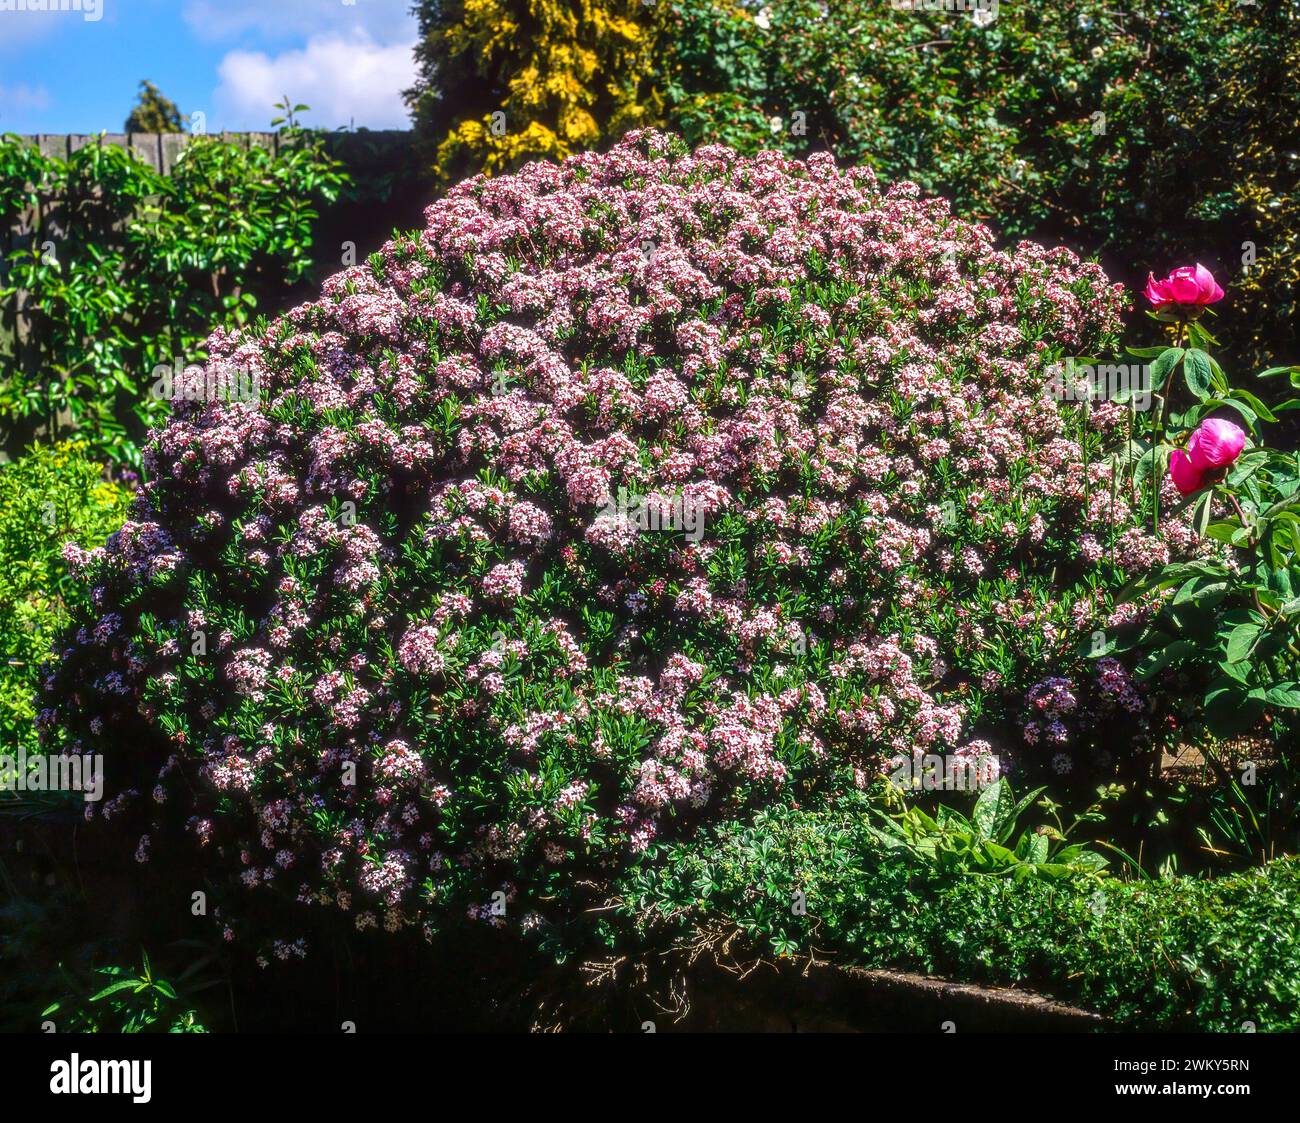 Großer Daphne x Burkwoodii (Burkwood daphne) immergrüner Sträucher bedeckt mit blassrosa Blüten im Juni, der im englischen Garten, England, Großbritannien, wächst Stockfoto